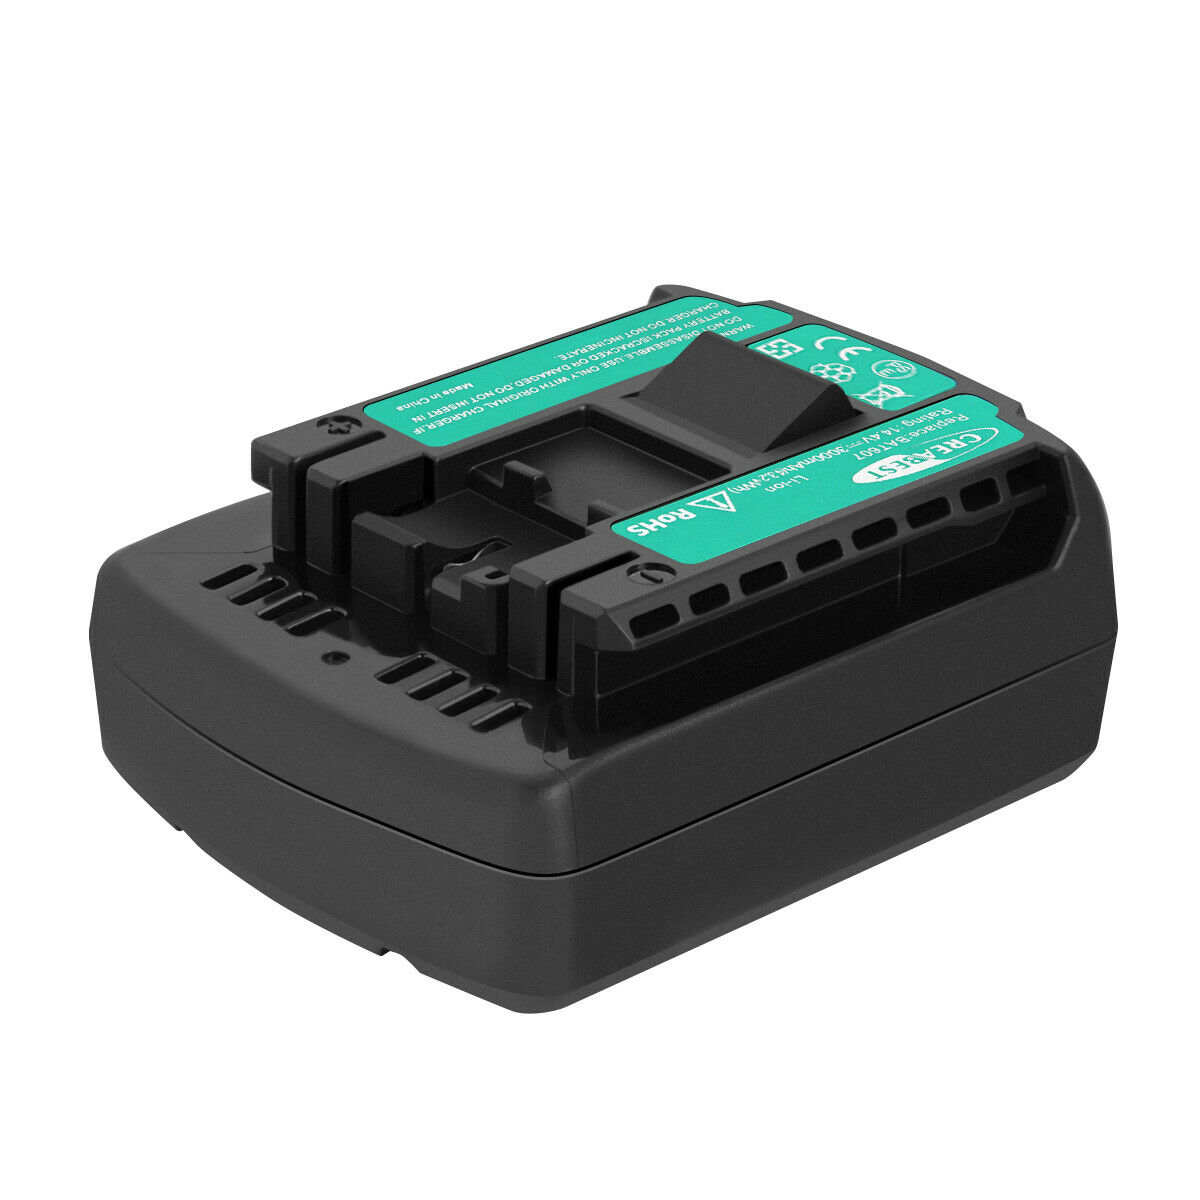 Batería Bosch DDB180-02,GDR 1080-LI, GDR 14.4 V-LI, GDR 14.4 V-LI MF(compatible)